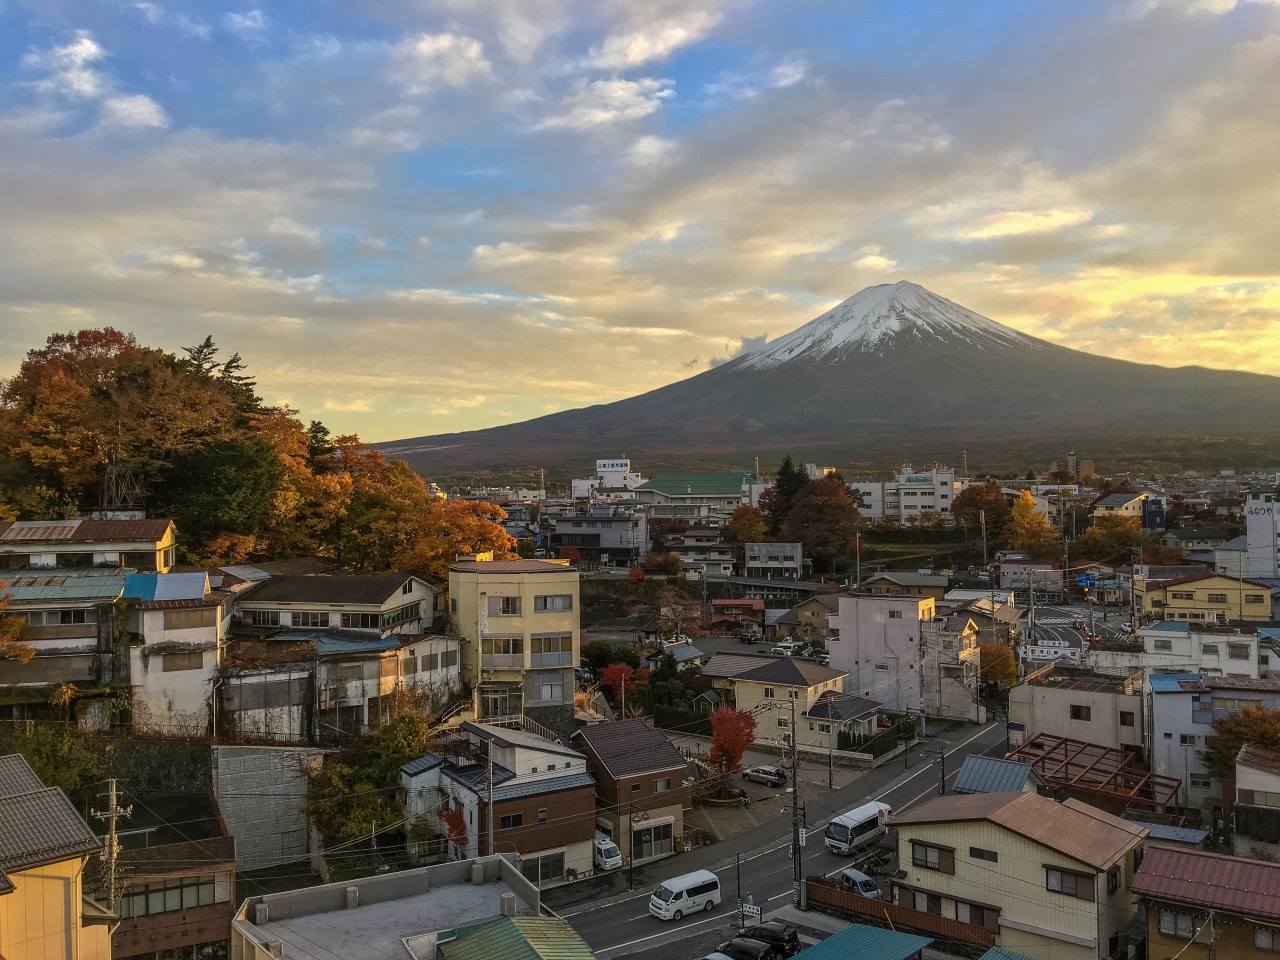 今次最大遺憾的是相機不小心弄壞了，只能用手機，下次一定要拍下富士山最美的畫面